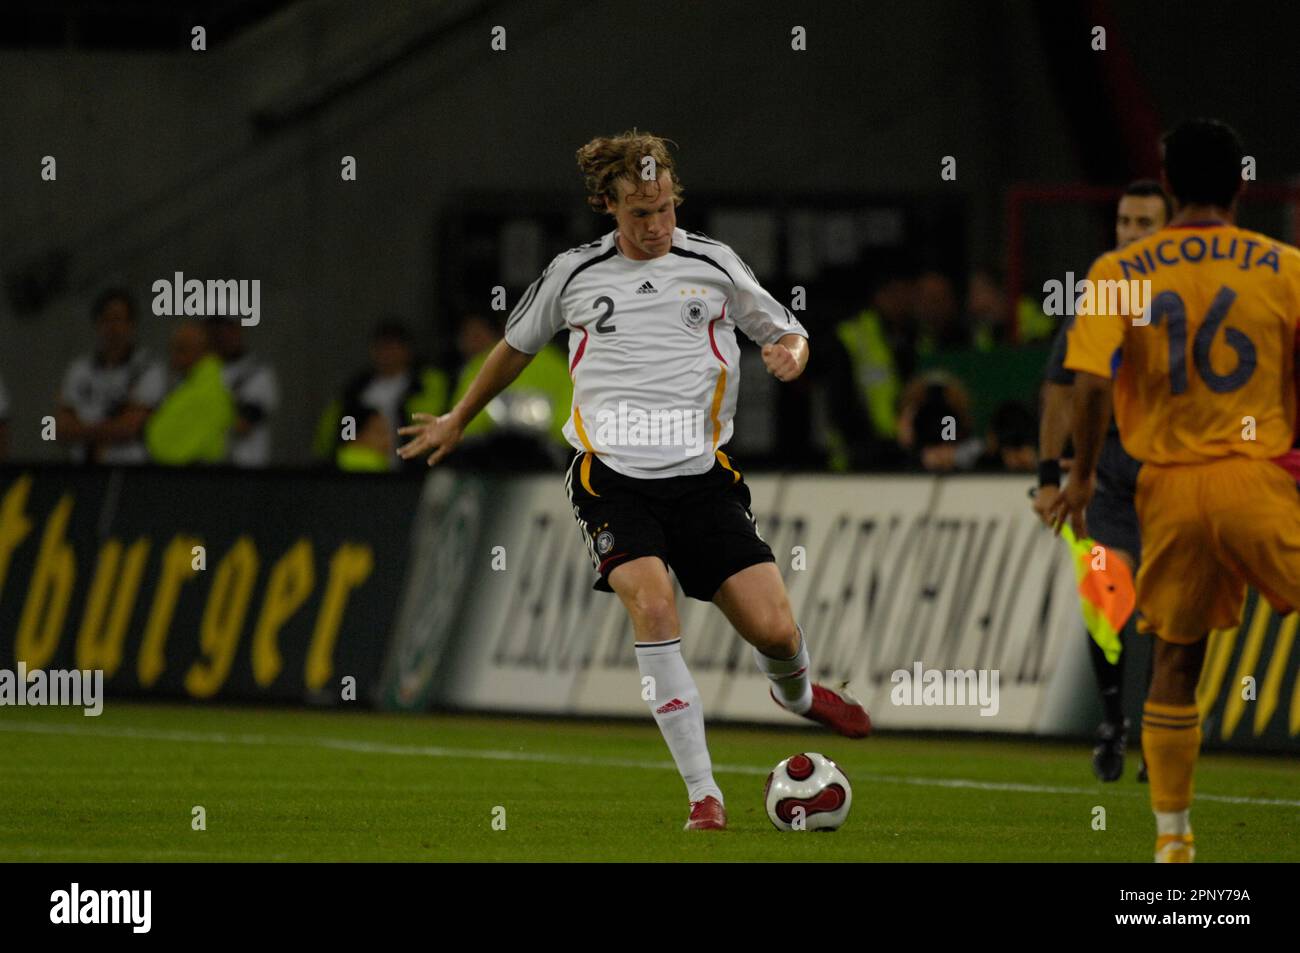 Marcell Jansen Aktion, Fußball Länderspiel Deutschland - Rumänien 3:1 in Köln 12.9.2007. Stock Photo